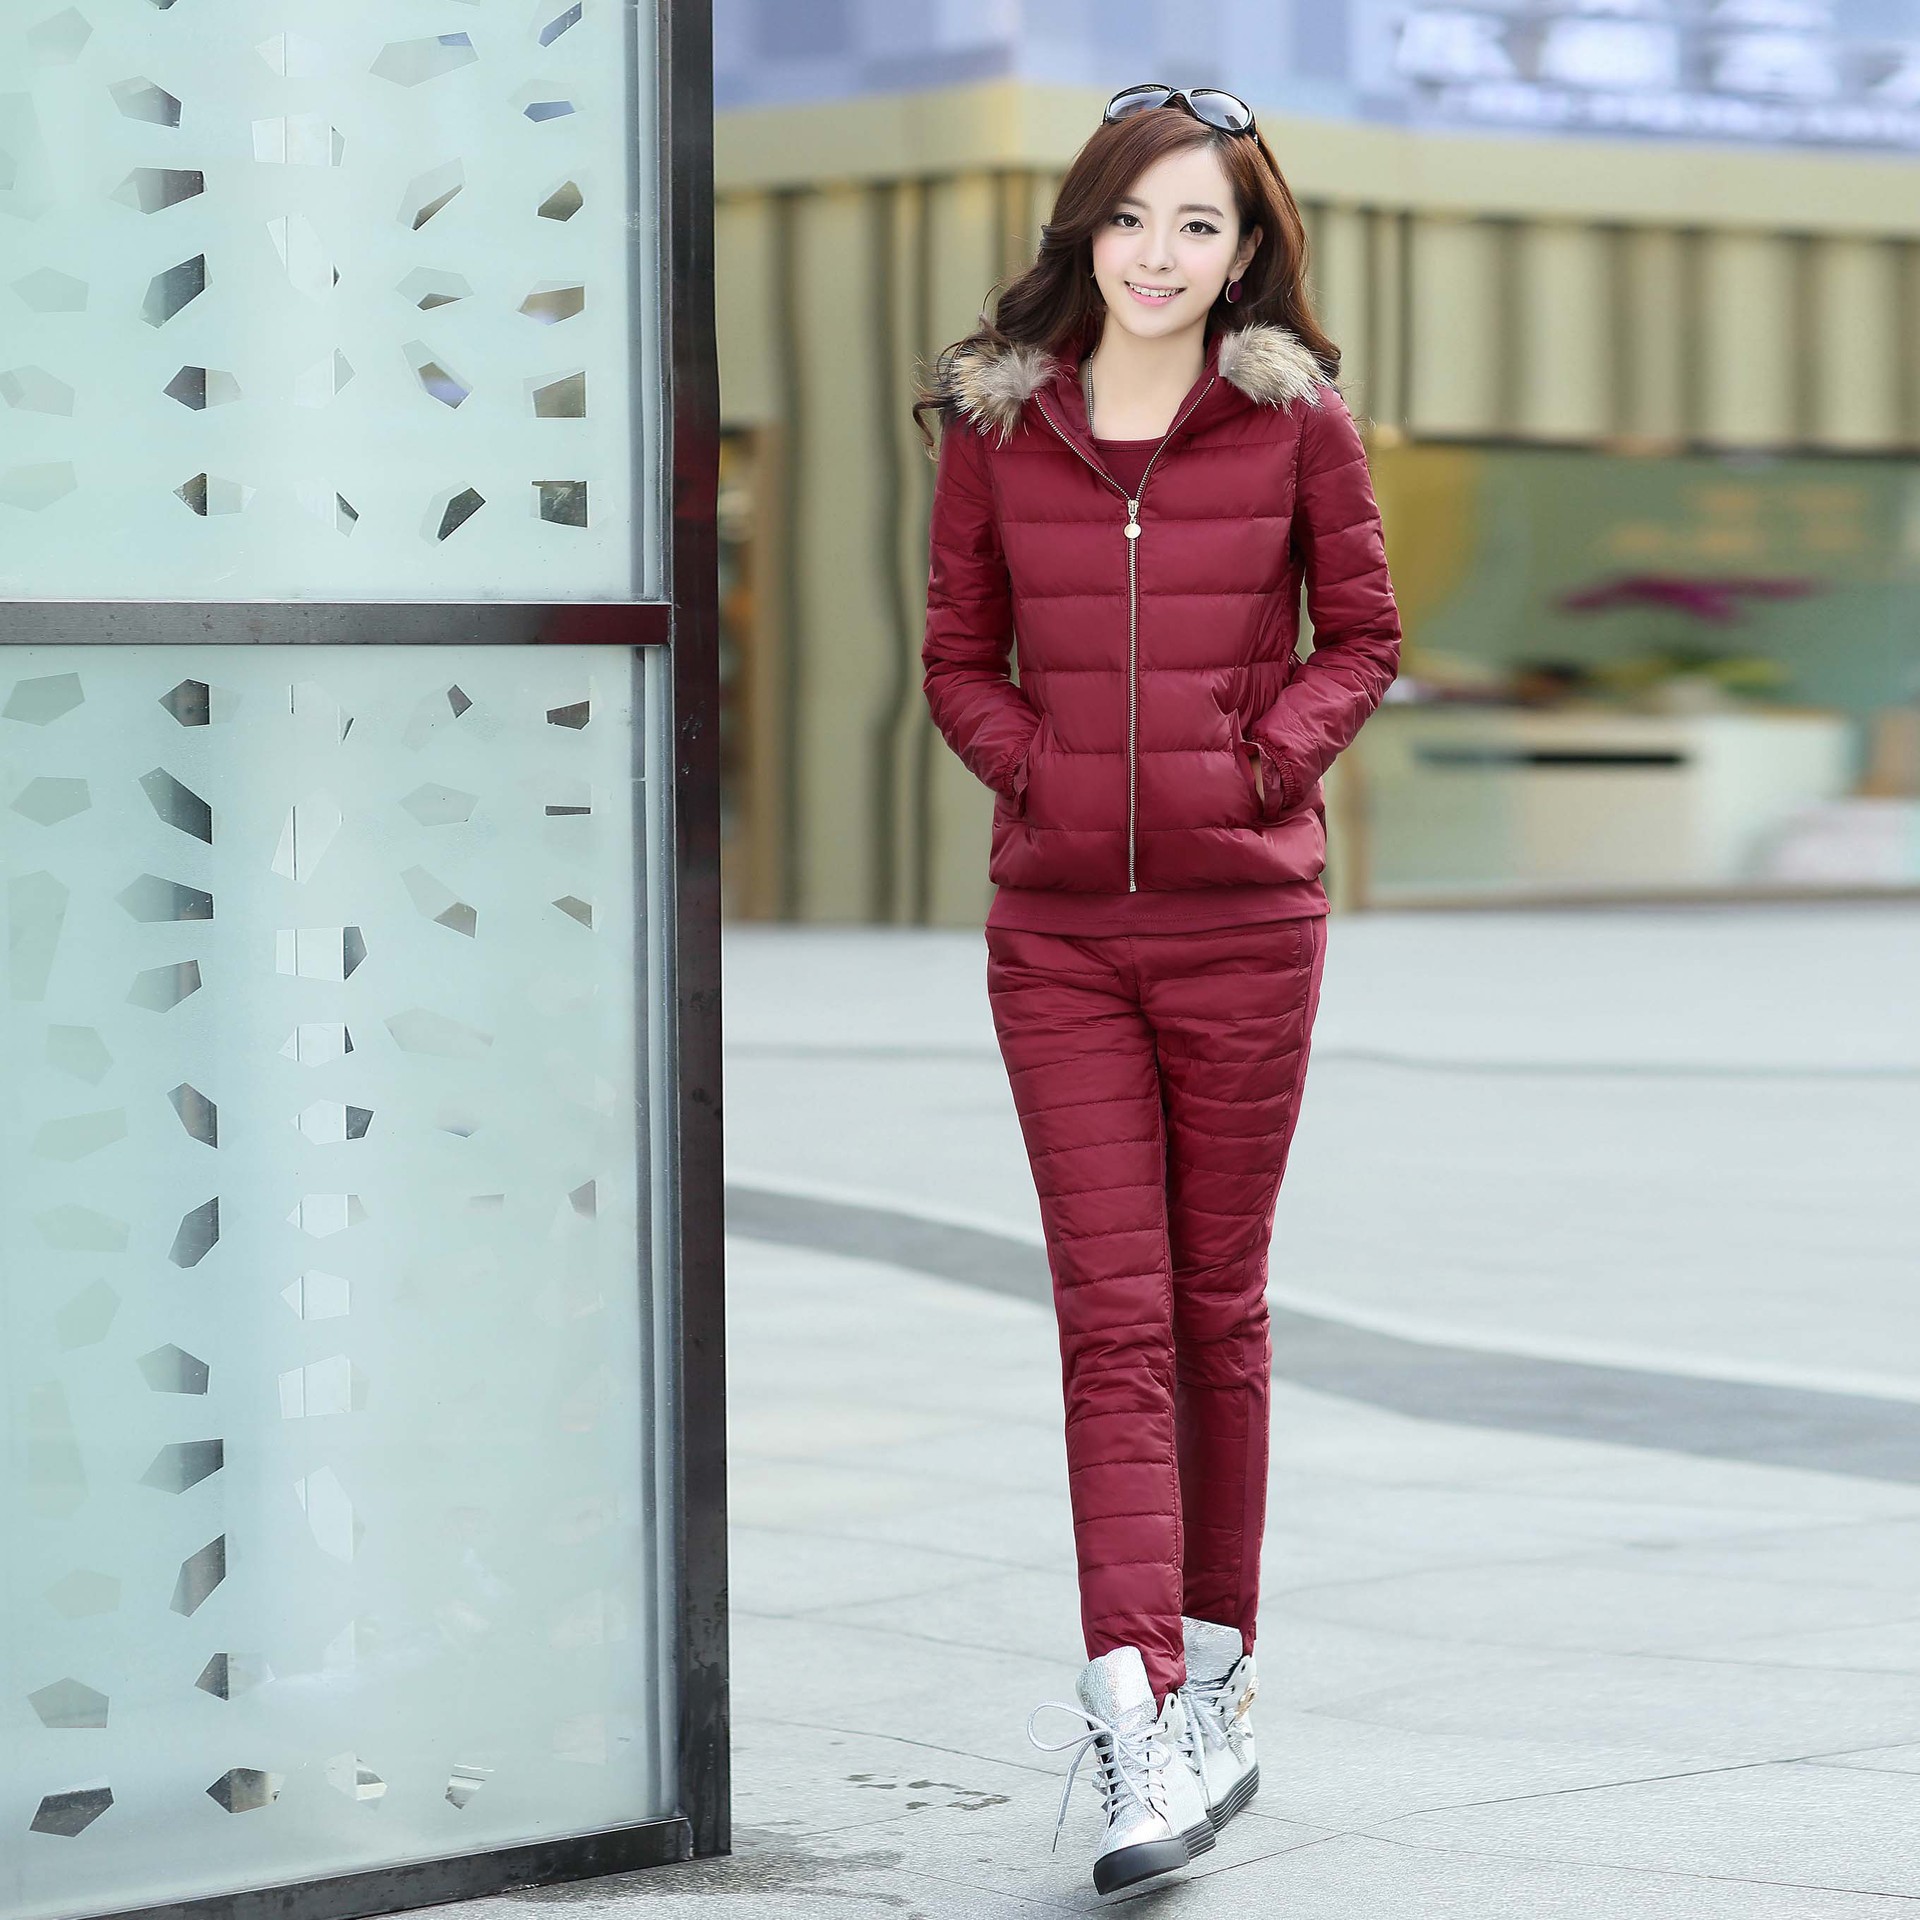 冬装新款女装韩版时尚休闲纯色拉链休闲套装批